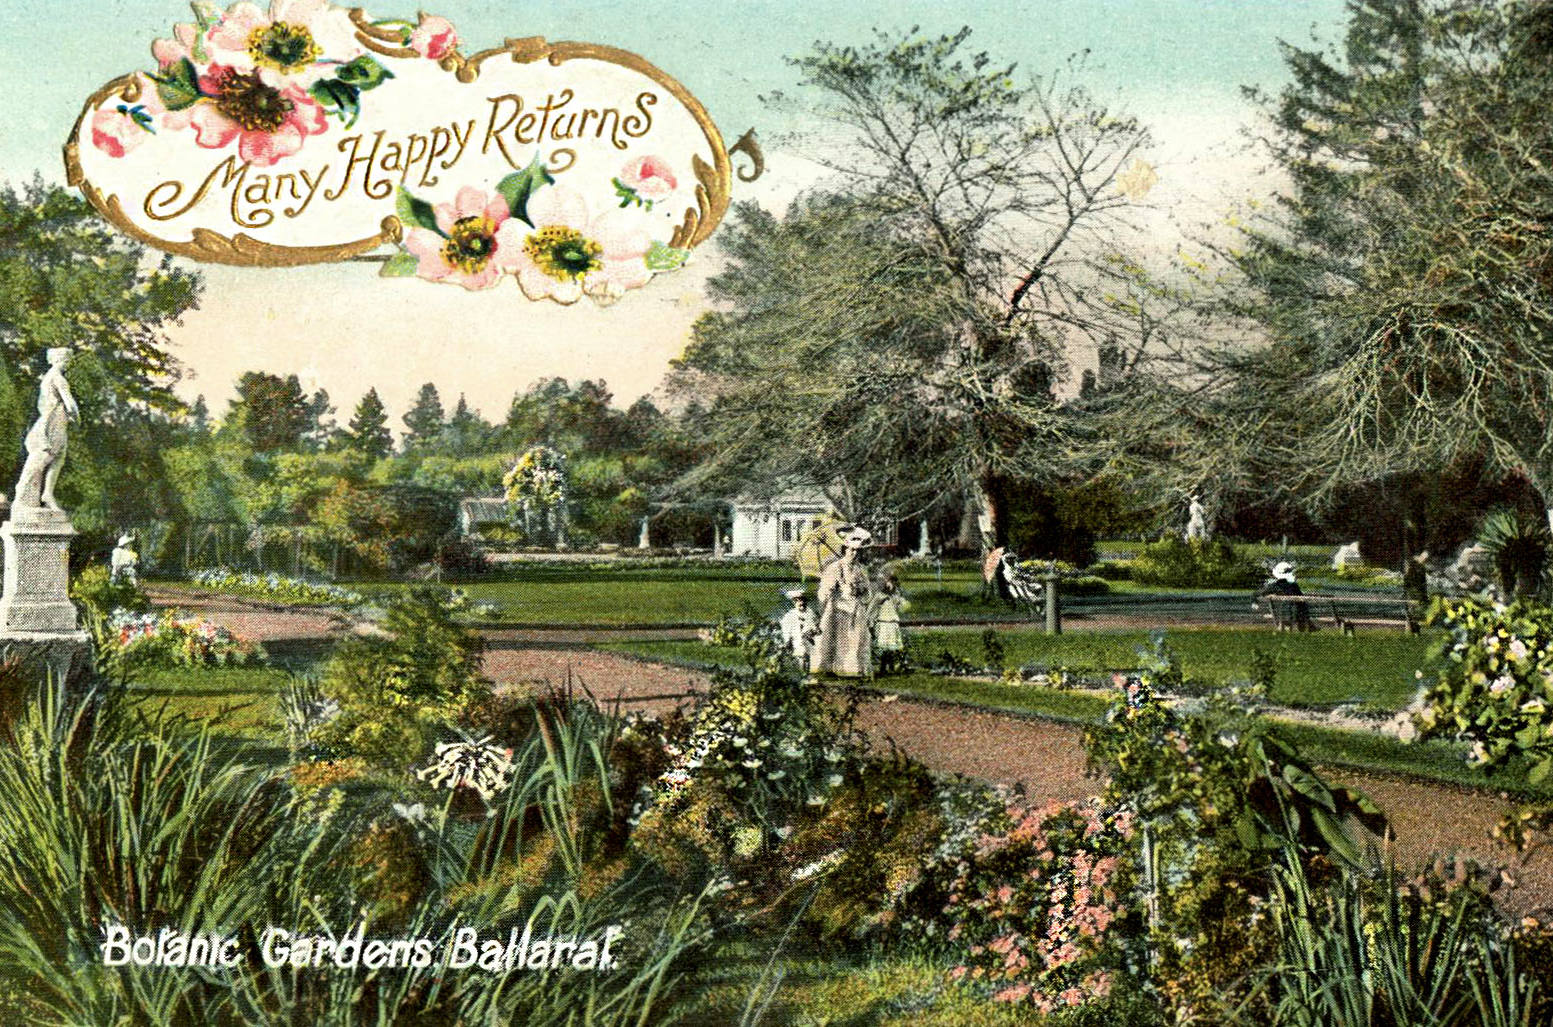 Botanic Gardens Ballarat